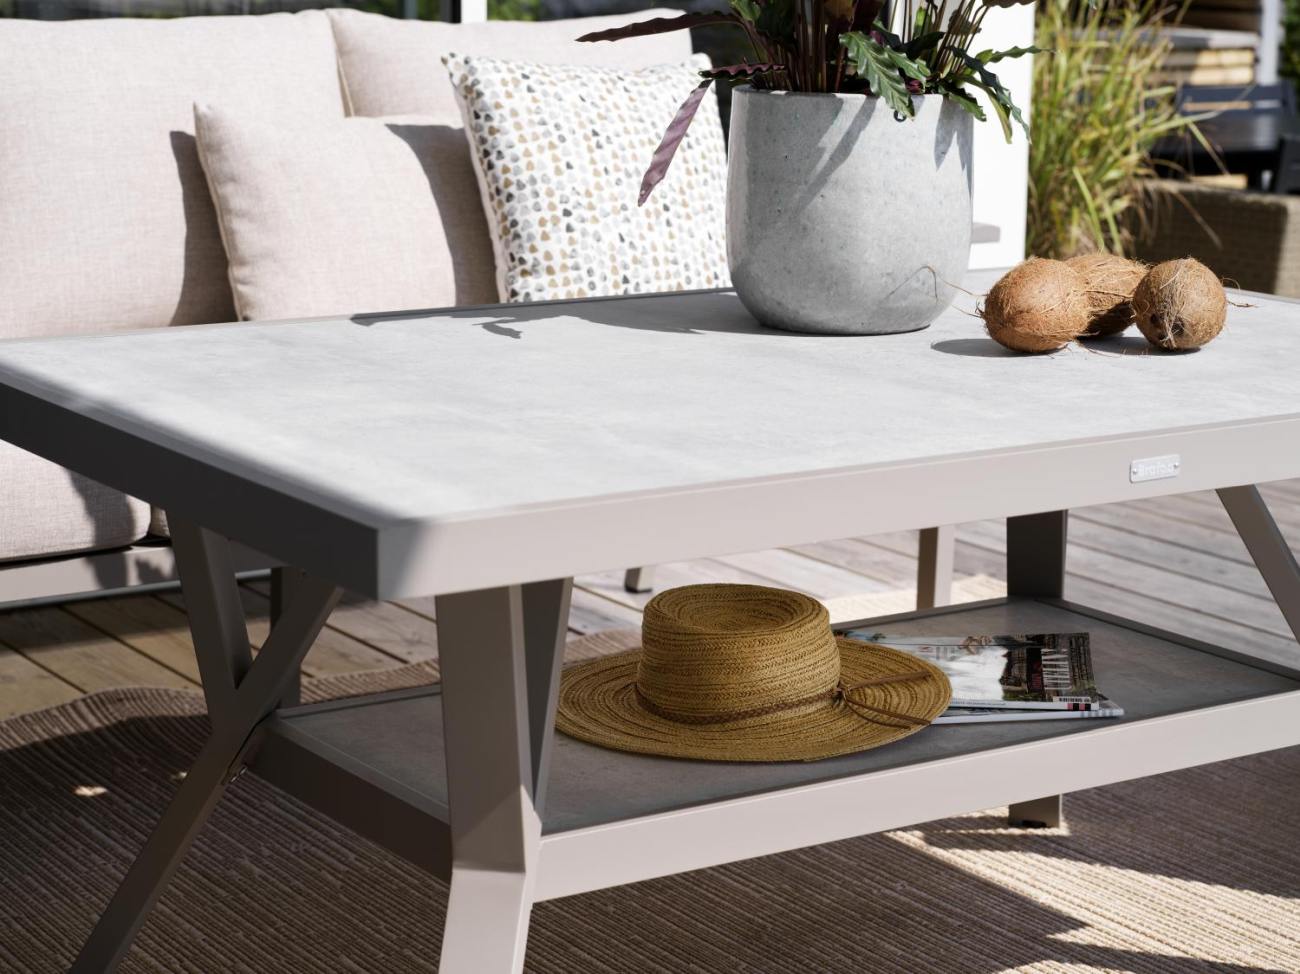 Der Gartentisch Samvaro überzeugt mit seinem modernen Design. Gefertigt wurde die Tischplatte aus Granit und hat einen hellgrauen Farbton. Das Gestell ist aus Metall und hat eine Kaki Farbe. Der Tisch besitzt eine Länge von 140 cm.